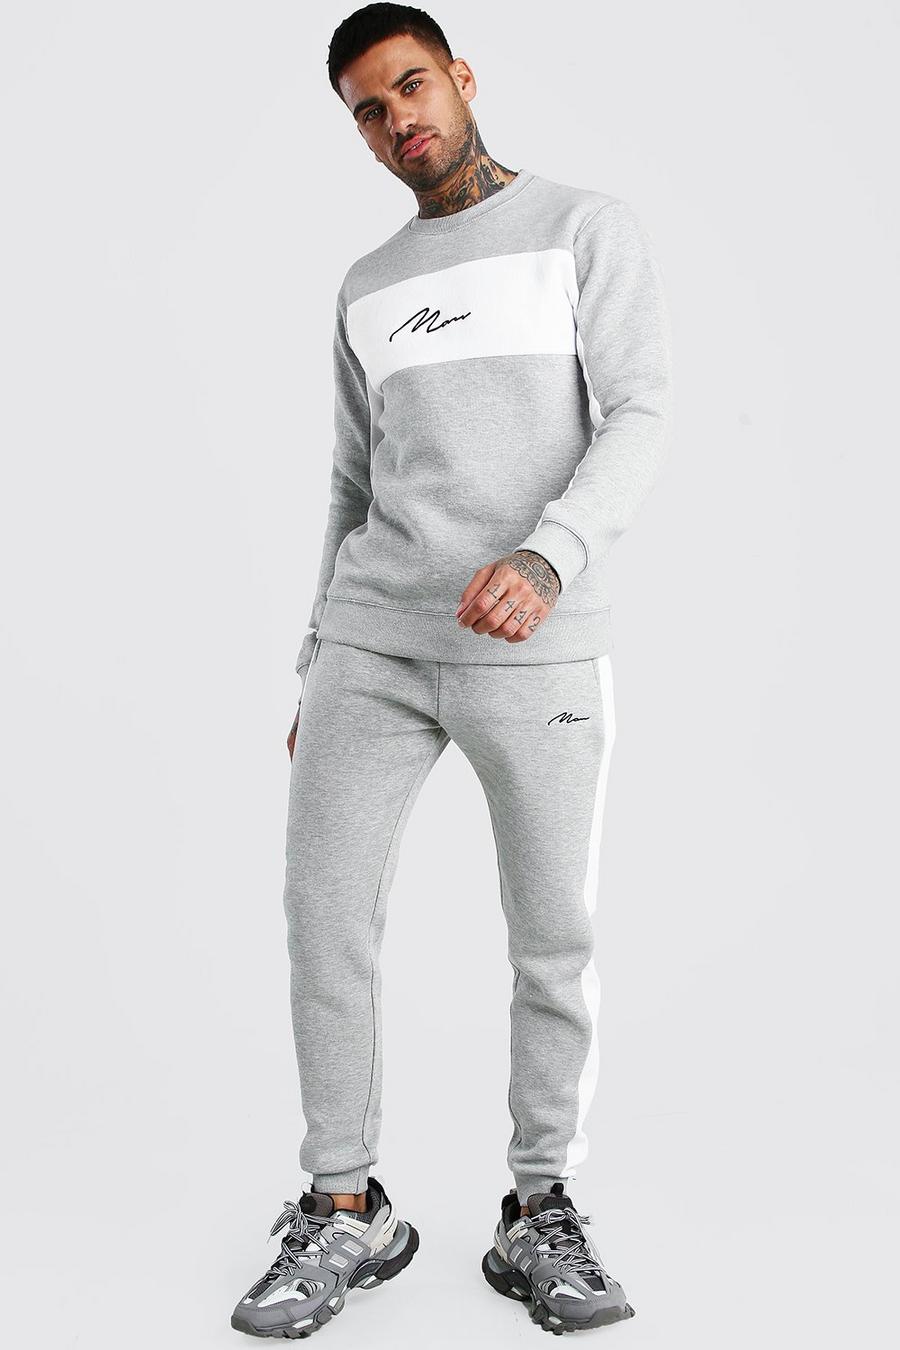 Colorblock-Trainingsanzug mit Pullover und MAN-Schriftzug, Grau meliert grey image number 1